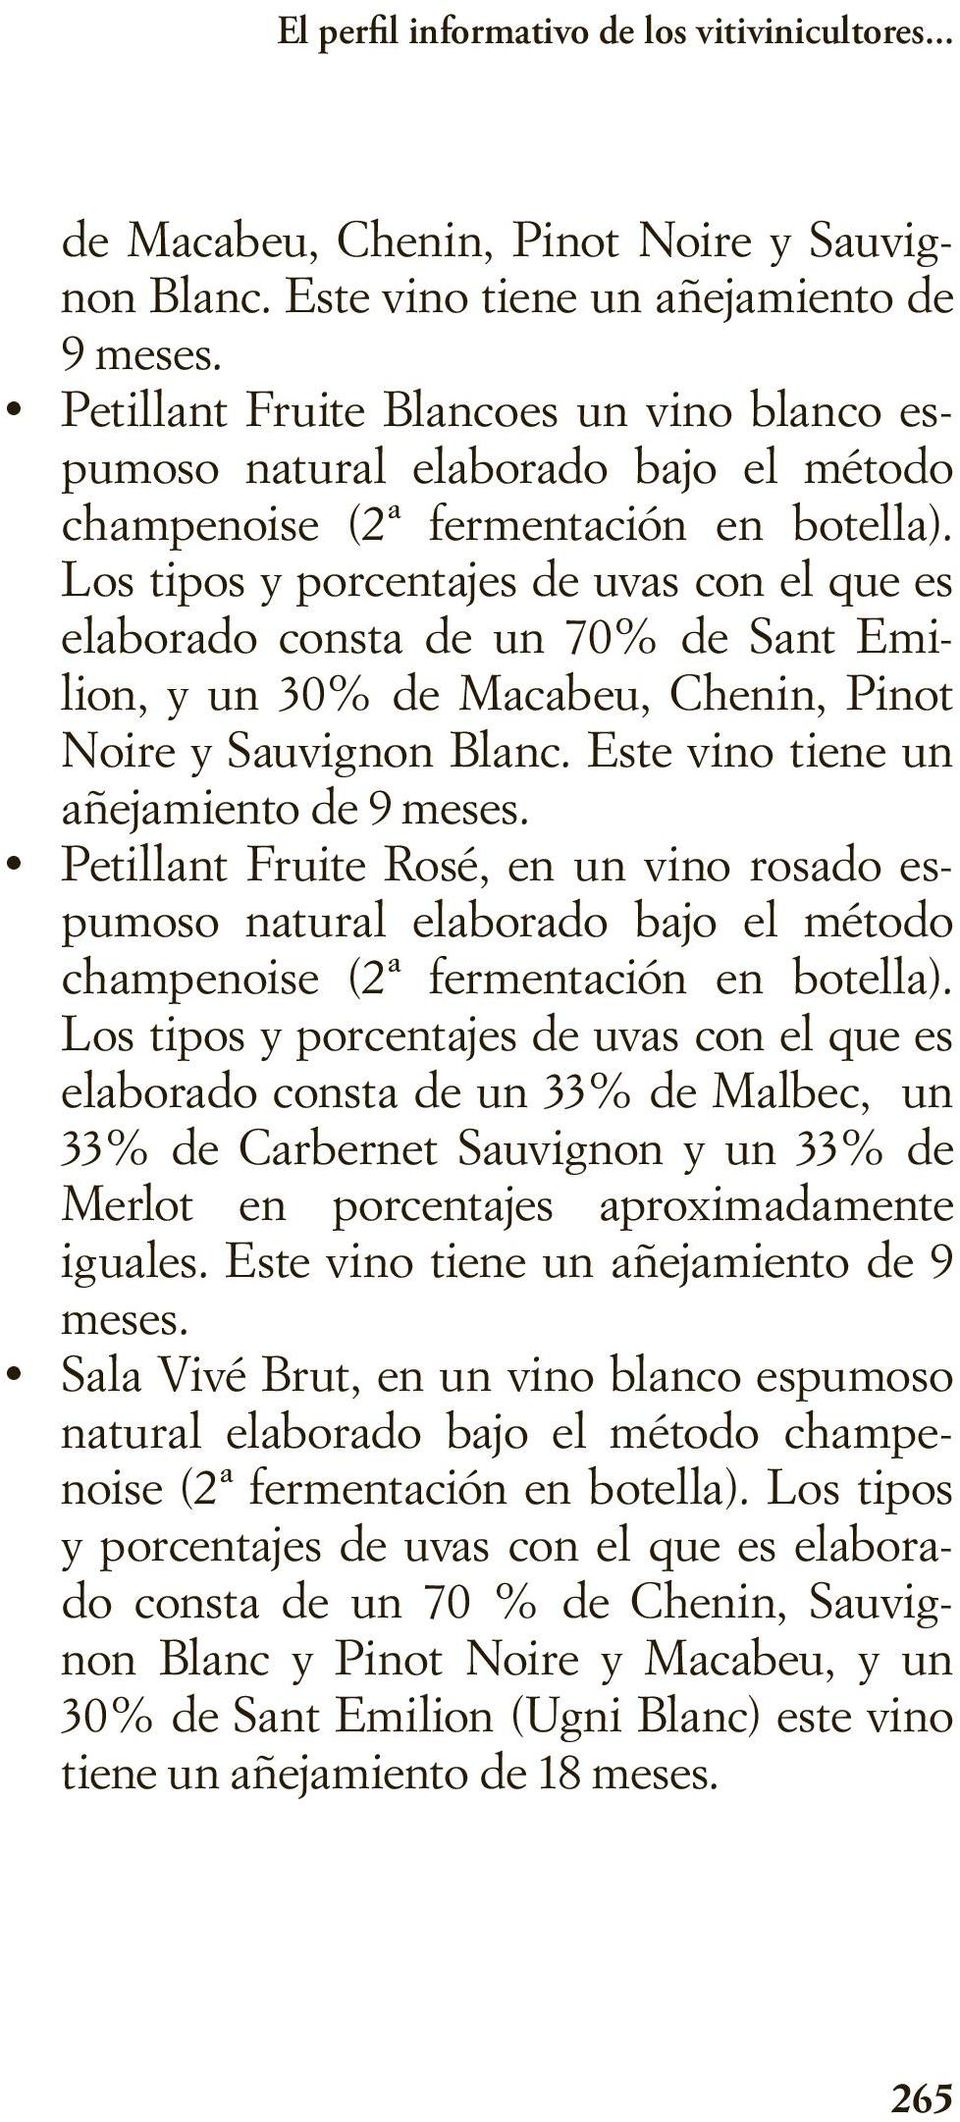 Los tipos y porcentajes de uvas con el que es elaborado consta de un 70% de Sant Emilion, y un 30% de Macabeu, Chenin, Pinot Noire y Sauvignon Blanc. Este vino tiene un añejamiento de 9 meses.